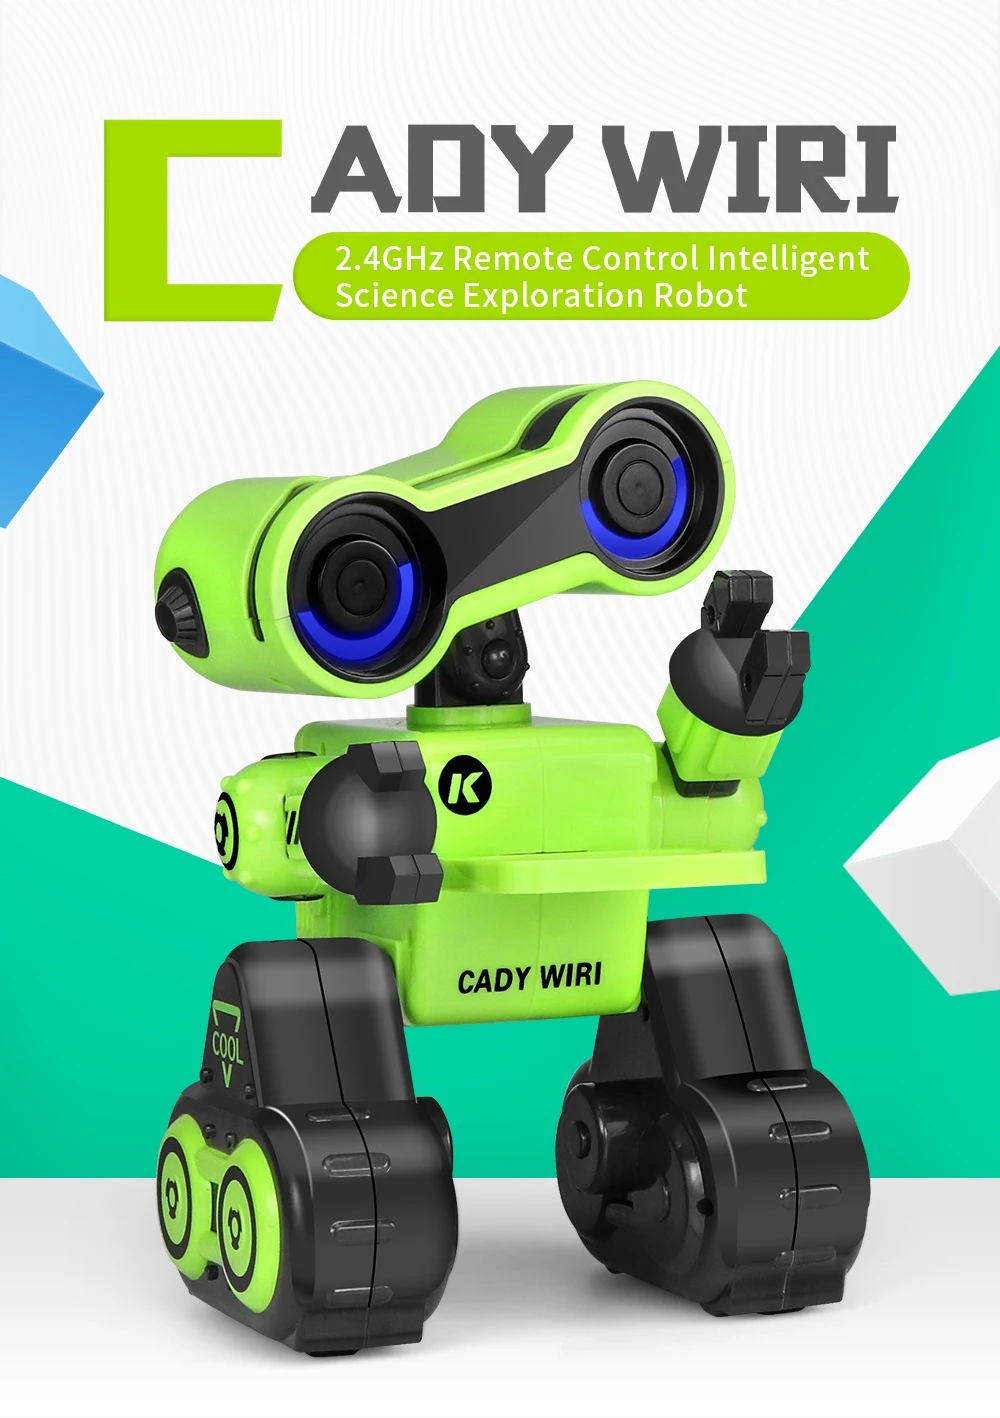 JJRC R13 RC робот CADY WIRI умный программируемый сенсорный контроль запись голосовых сообщений поет танец роботы игрушки для детей подарок VS R4